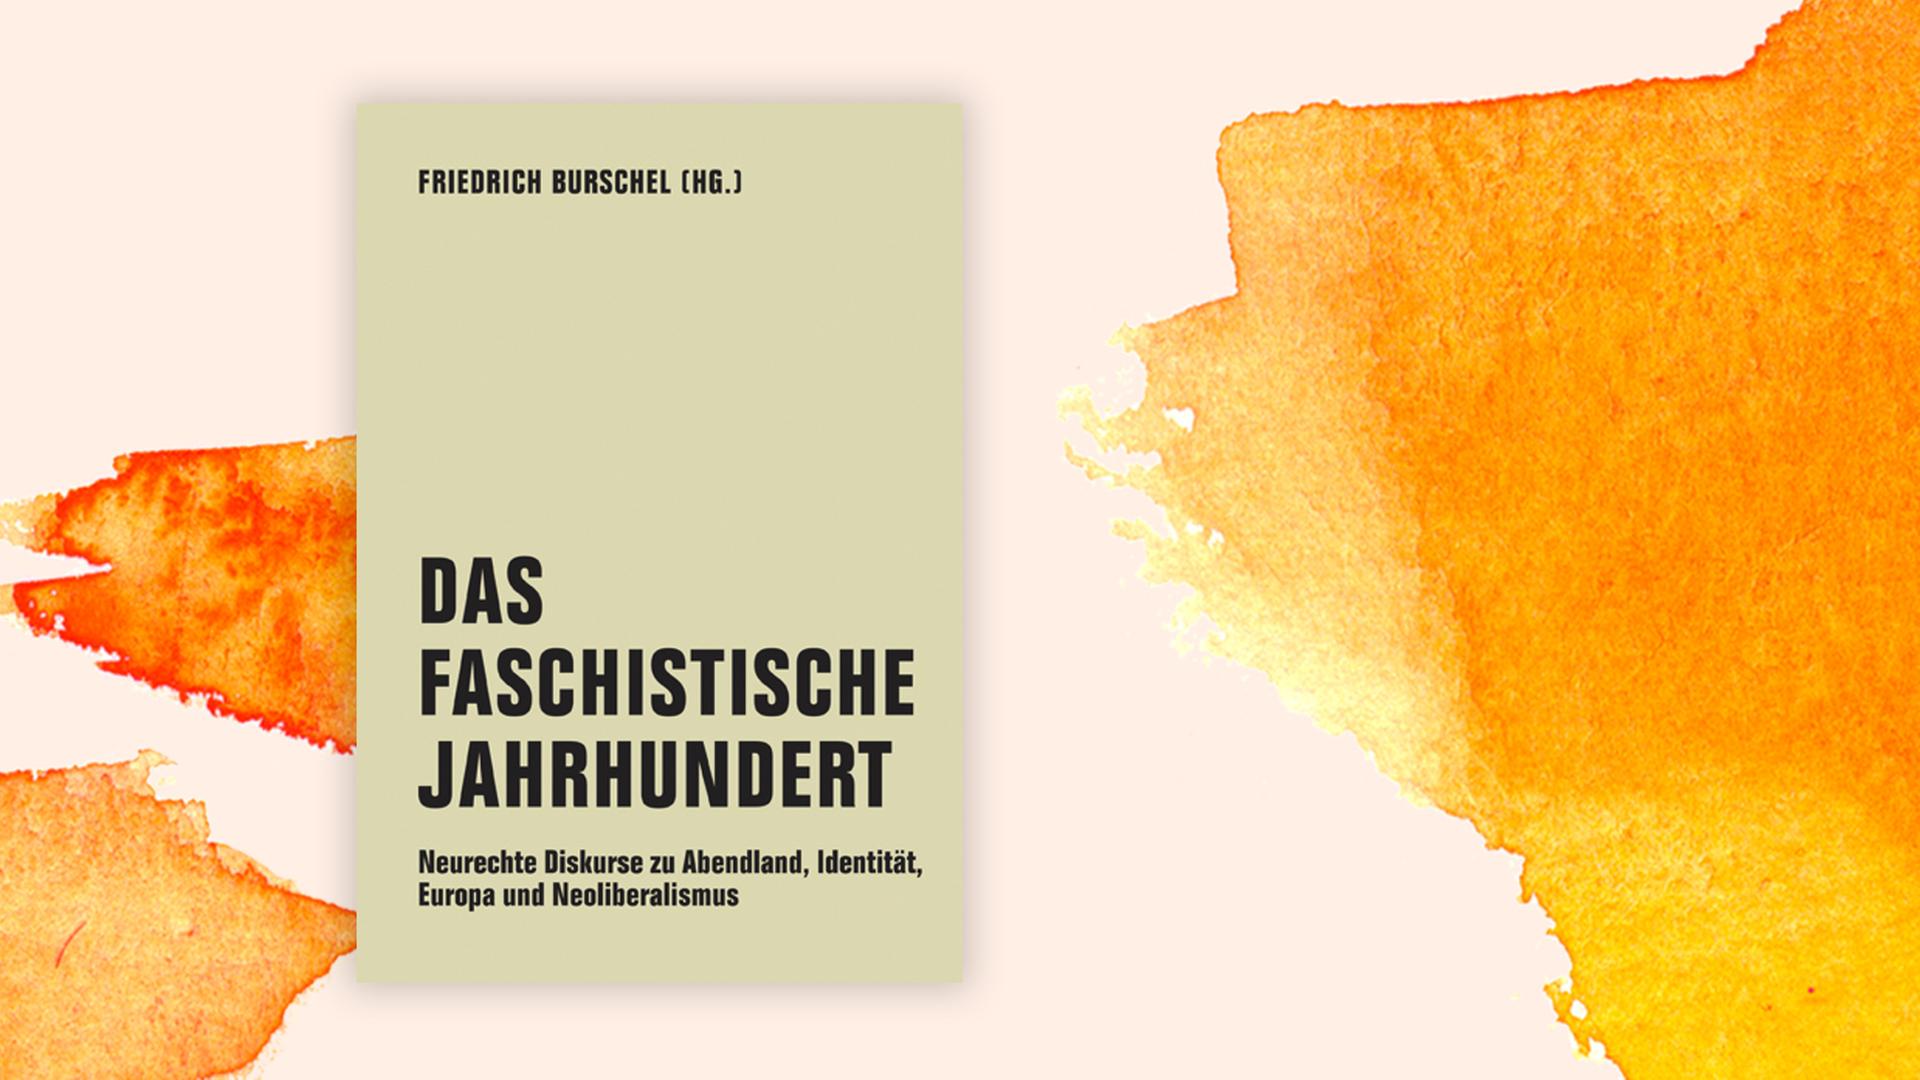 Buchcover "Das faschistische Jahrhundert" von Friedrich Burschel